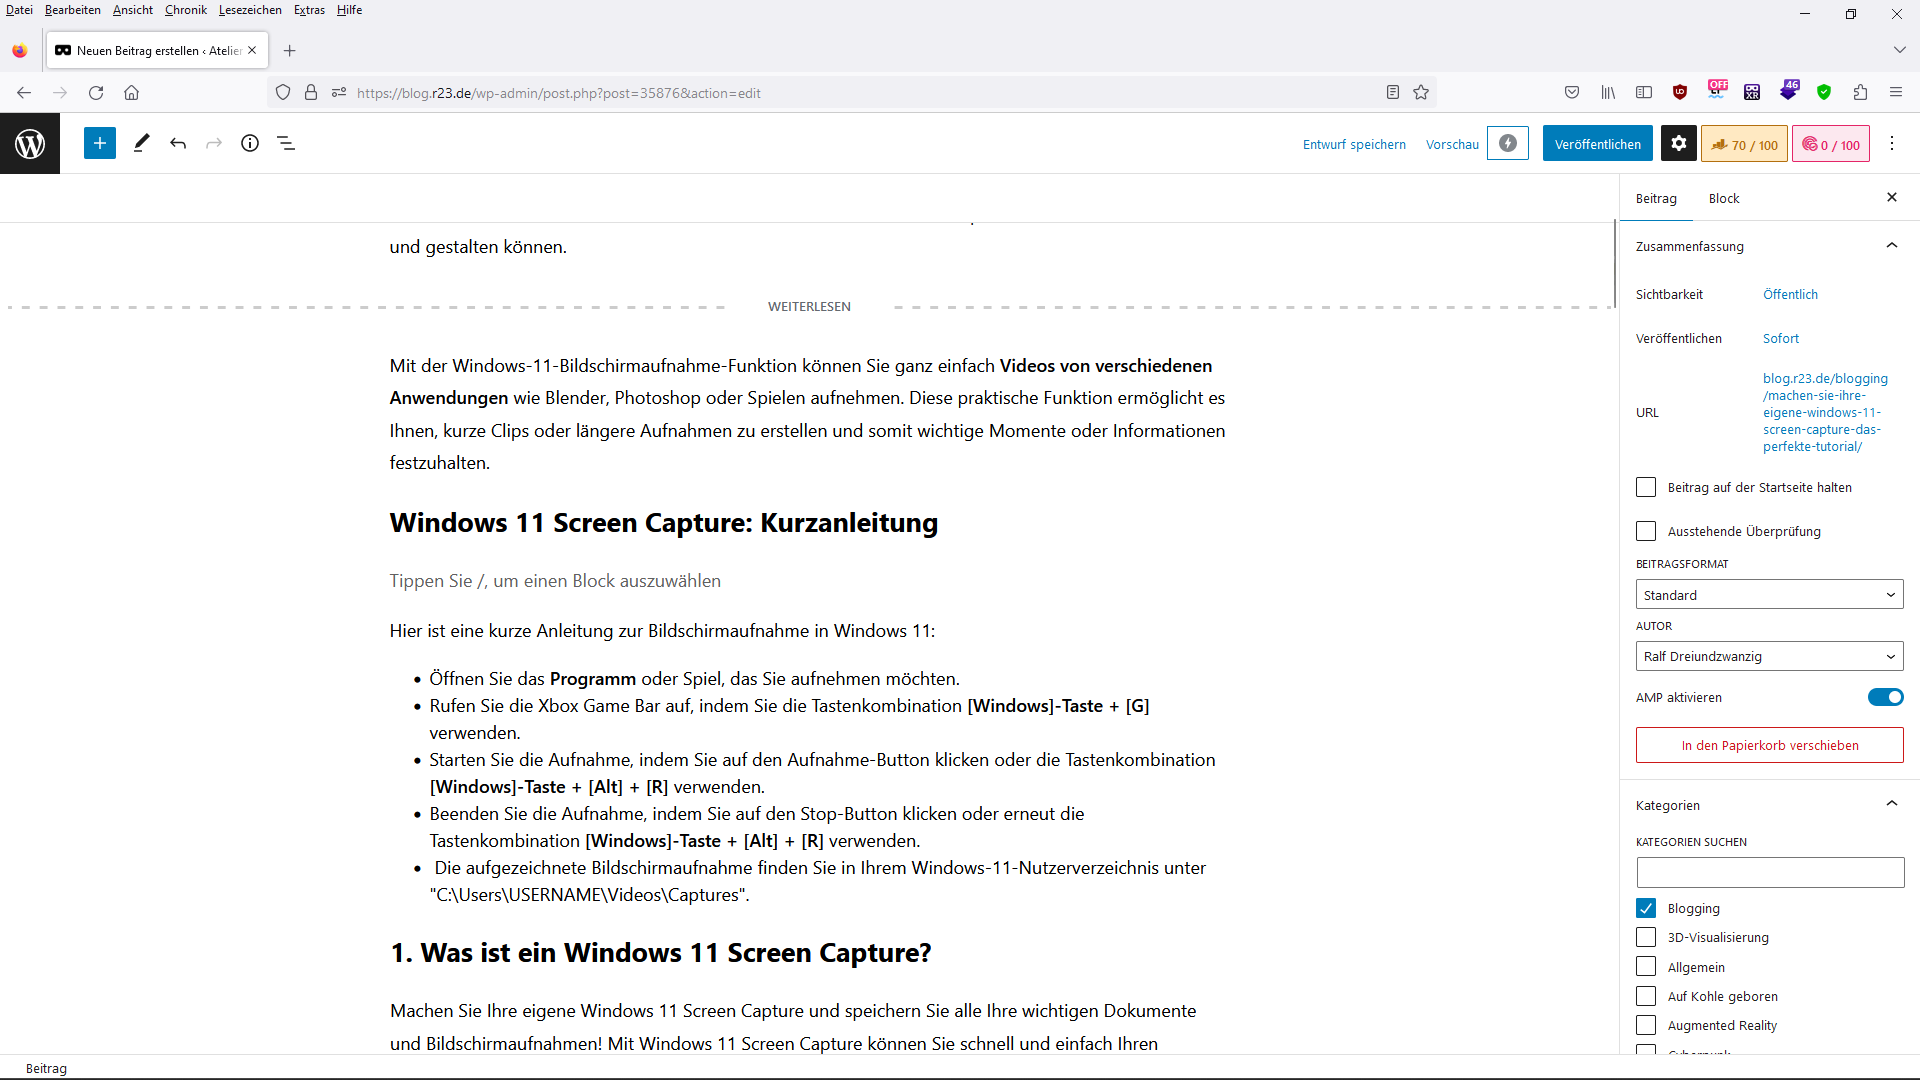 Machen Sie Ihre eigene Windows 11 Screen Capture: Das Perfekte Tutorial